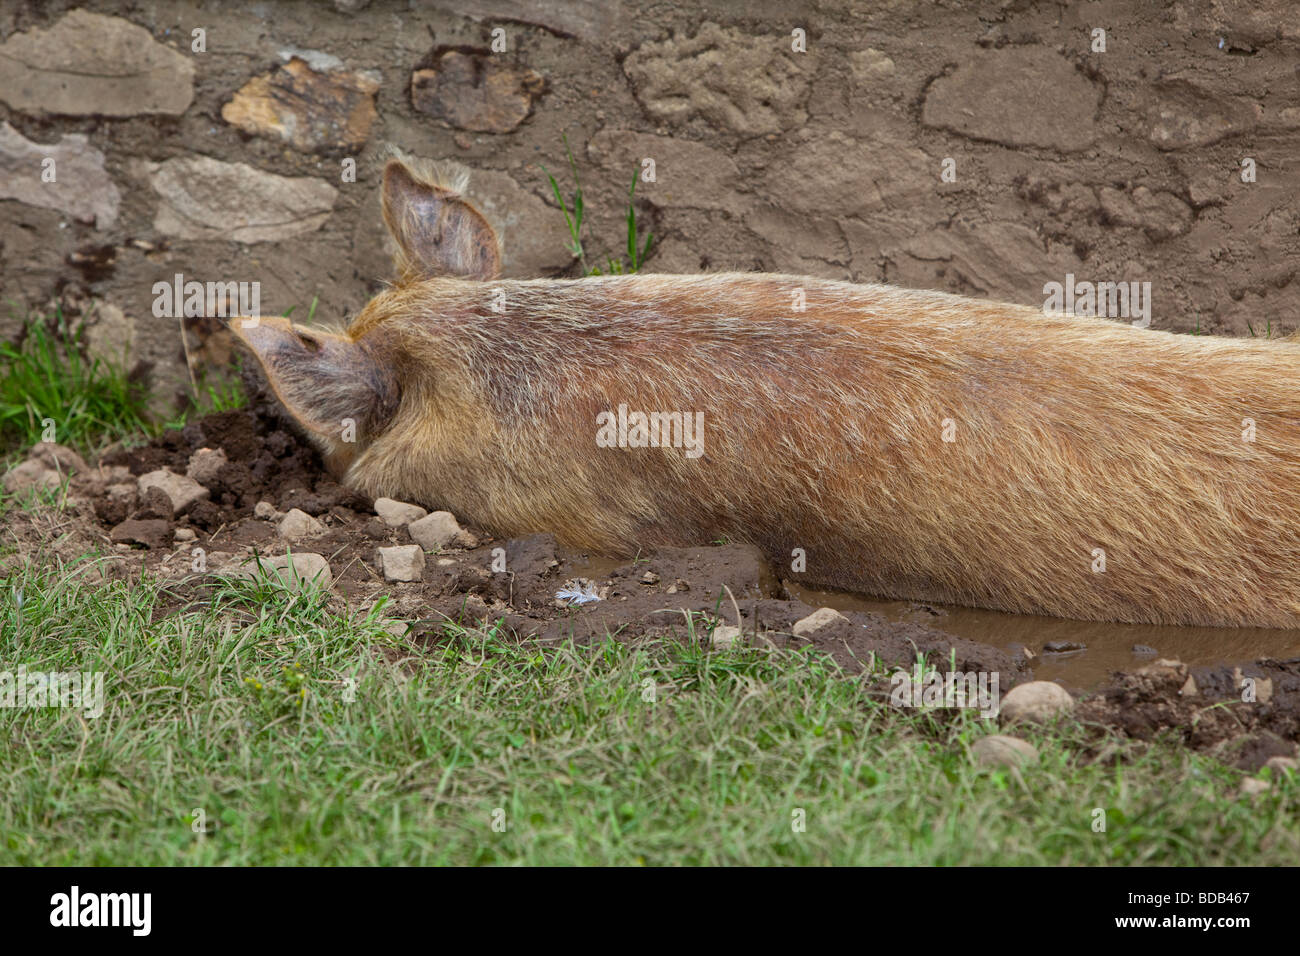 Race Tamworth sow pig se vautrer dans la boue Banque D'Images